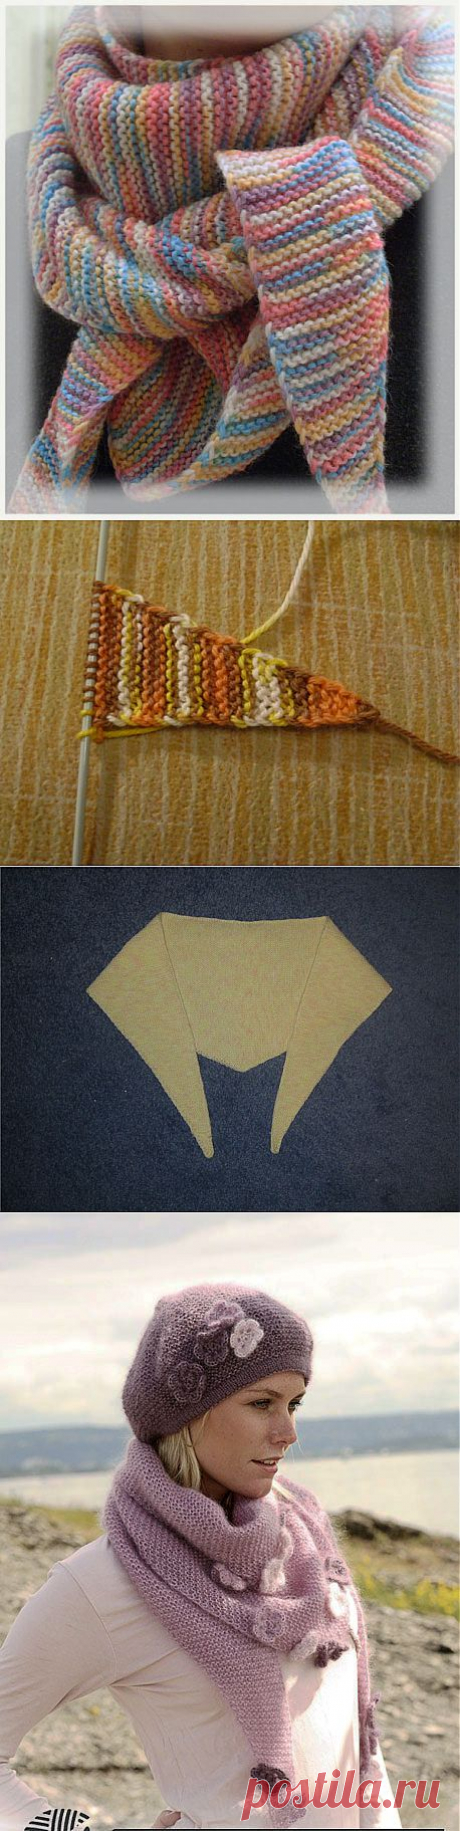 Вяжем бактус(треугольный шарф - косынка) + митенки..